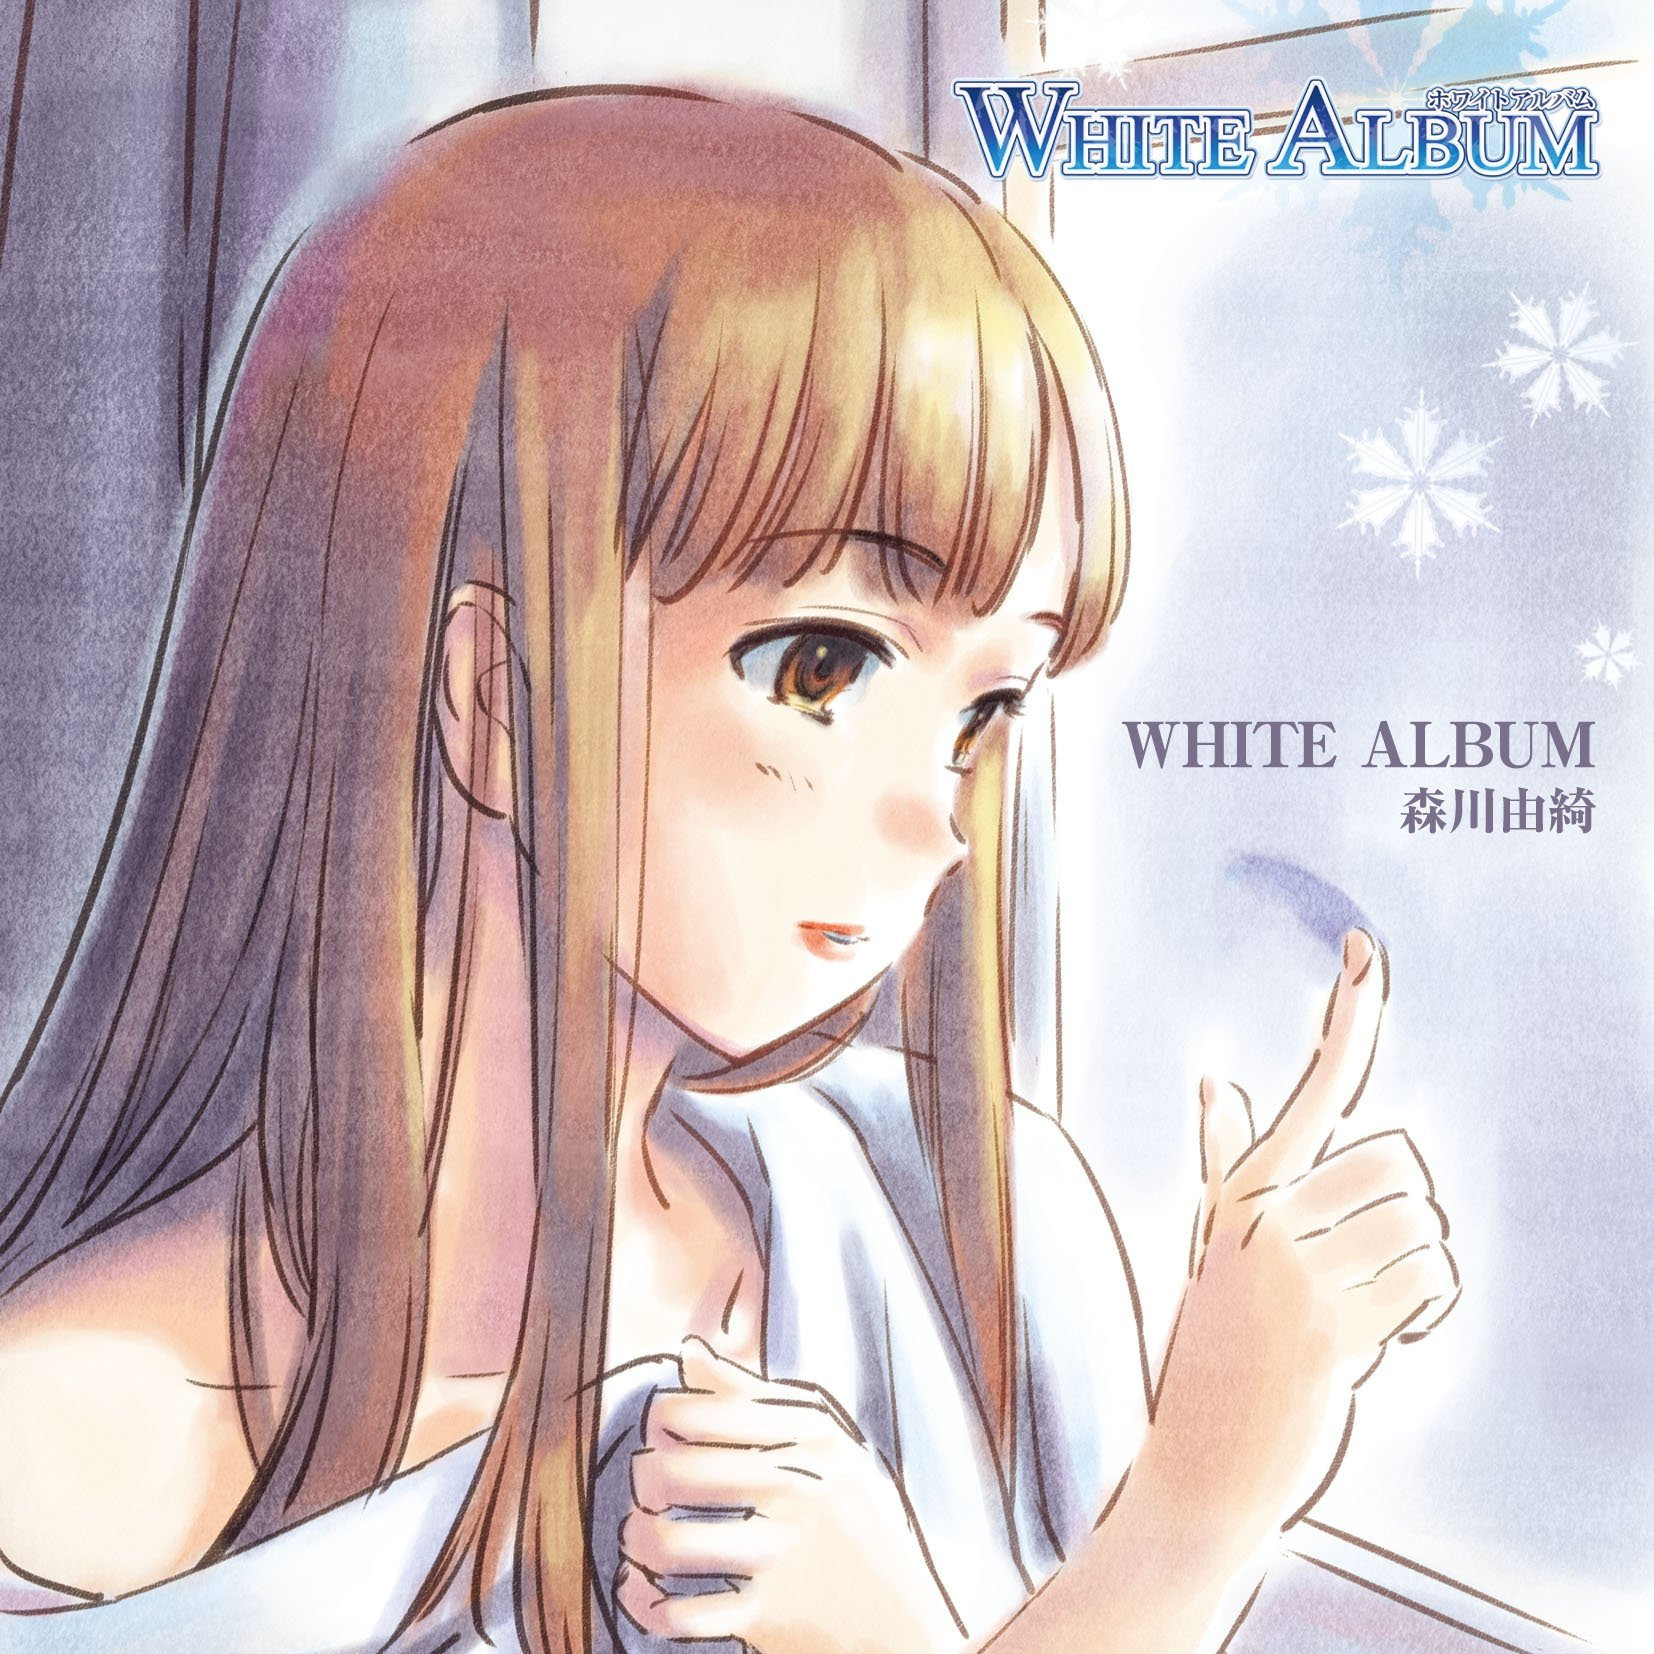 White album 1998